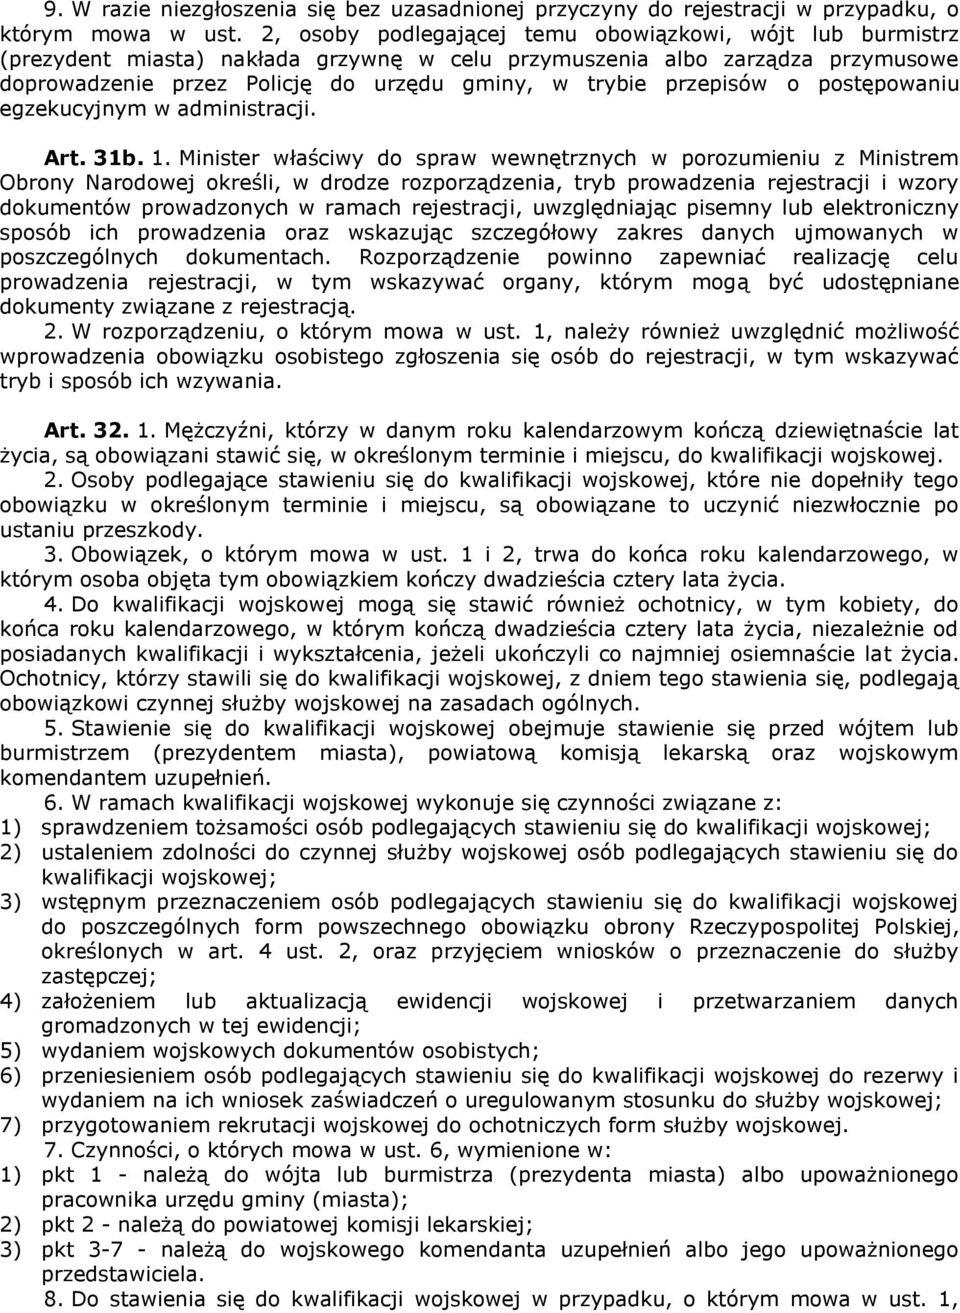 przepisów o postępowaniu egzekucyjnym w administracji. Art. 31b. 1.